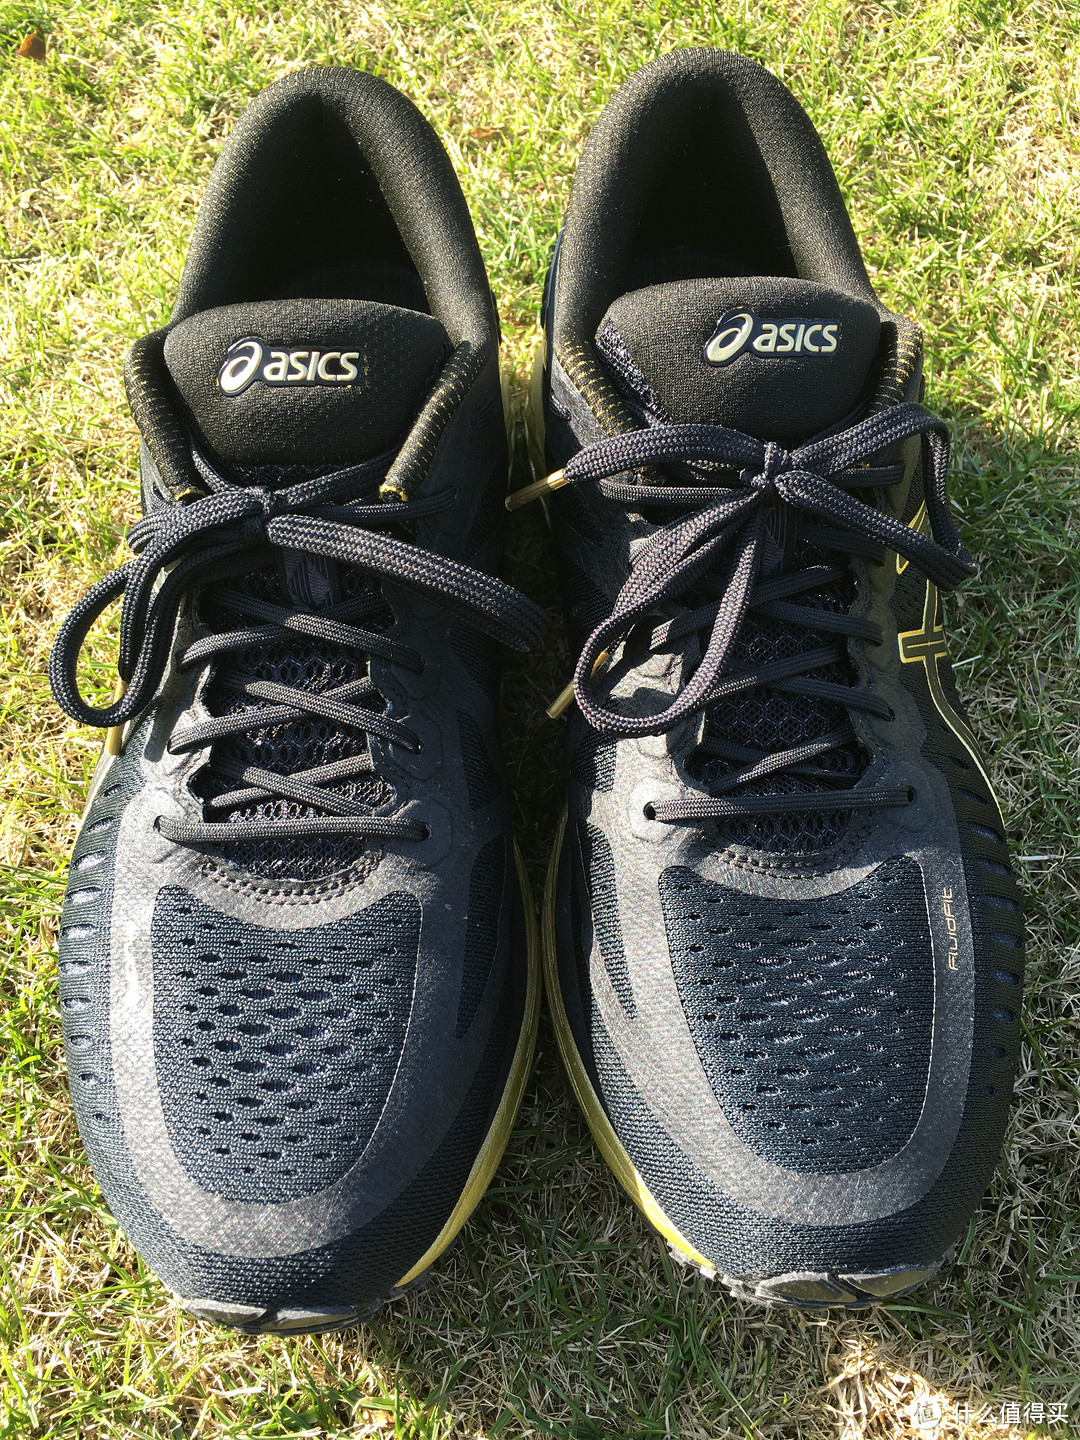 一个业余跑者入手ASICS 亚瑟士 Metarun 跑鞋 试穿一月的感受